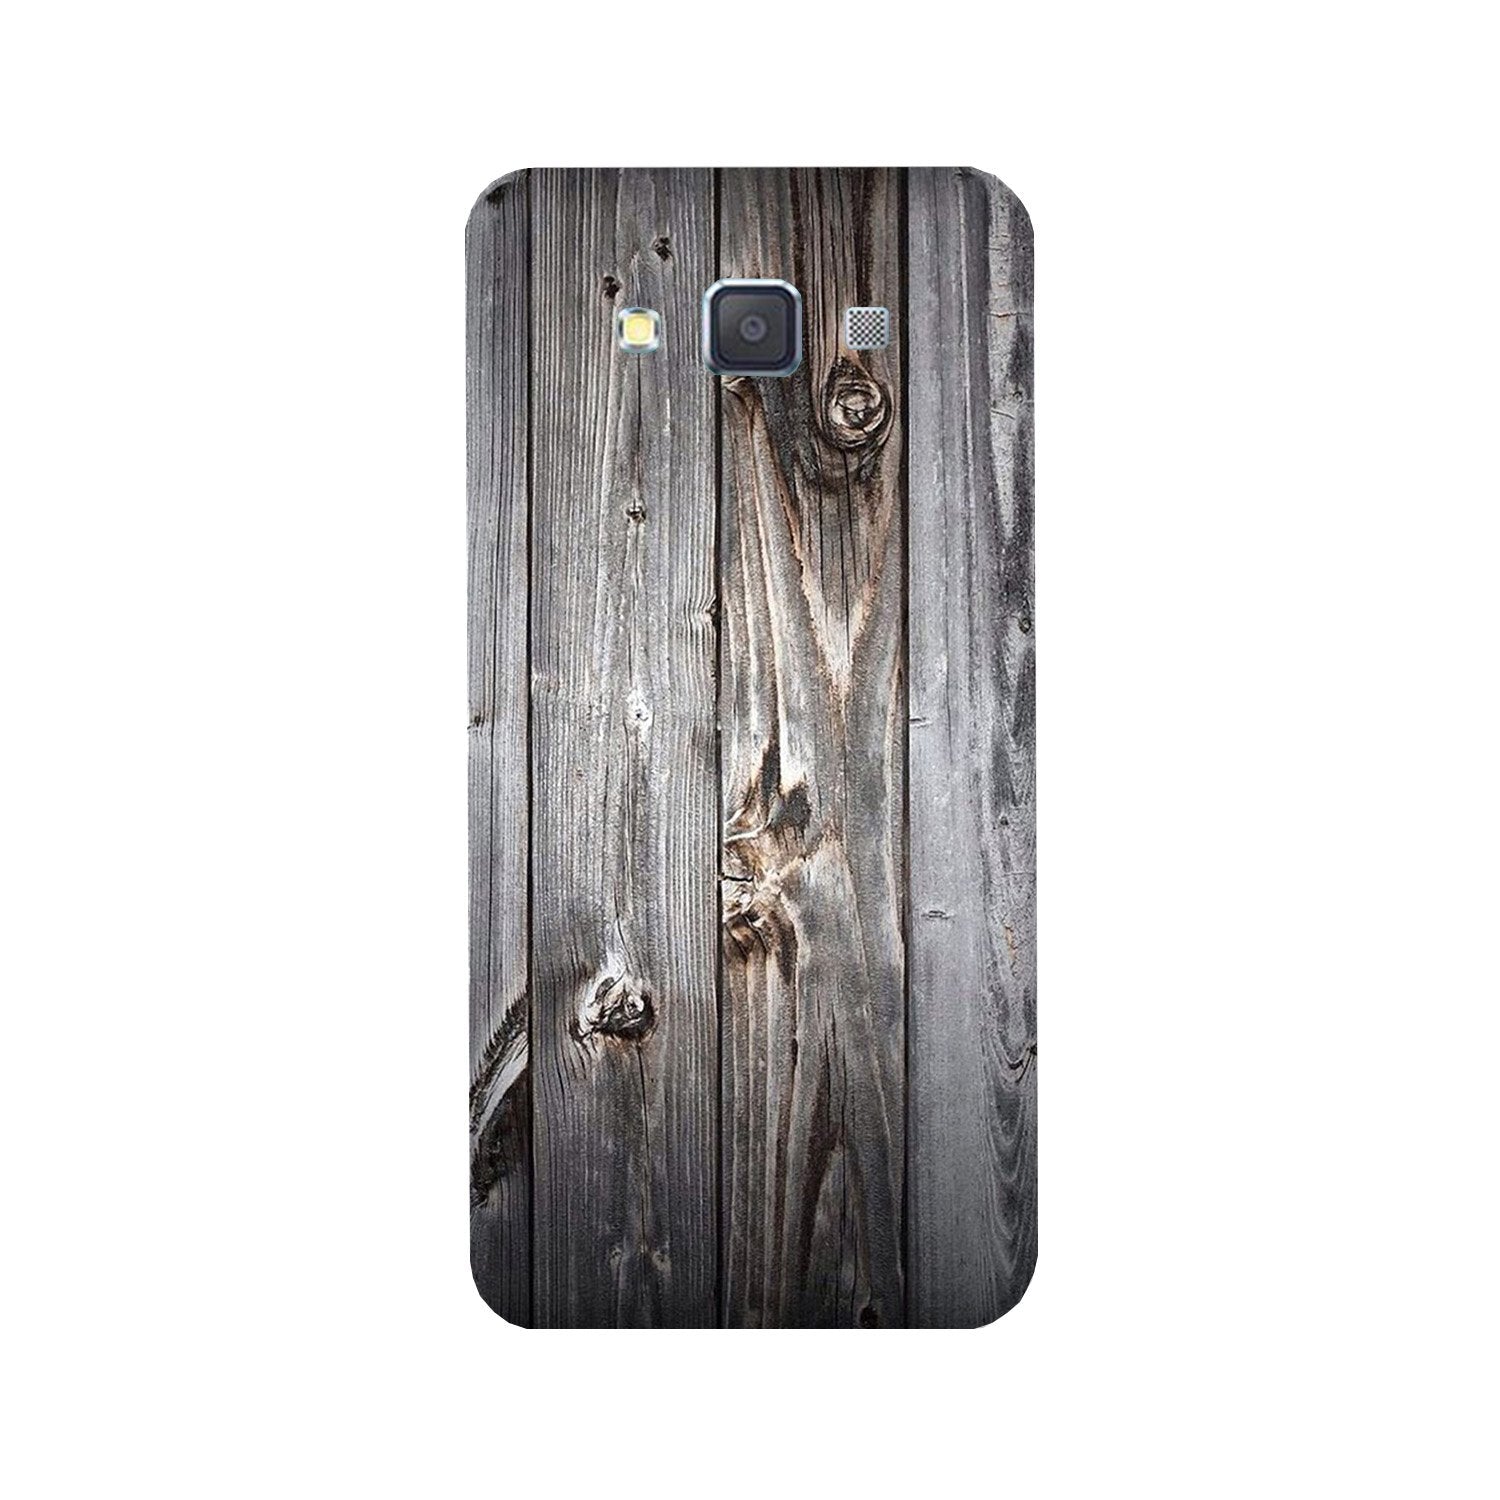 Wooden Look Case for Galaxy E5(Design - 114)